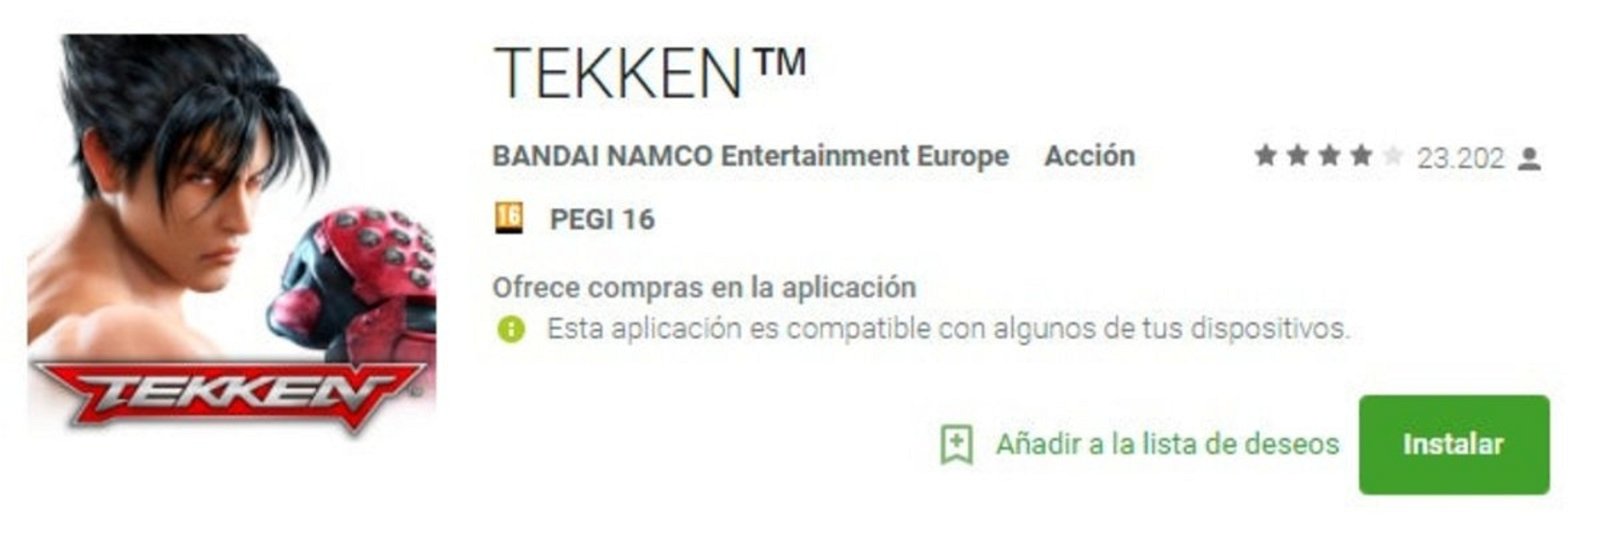 Ficha Tekken en Android